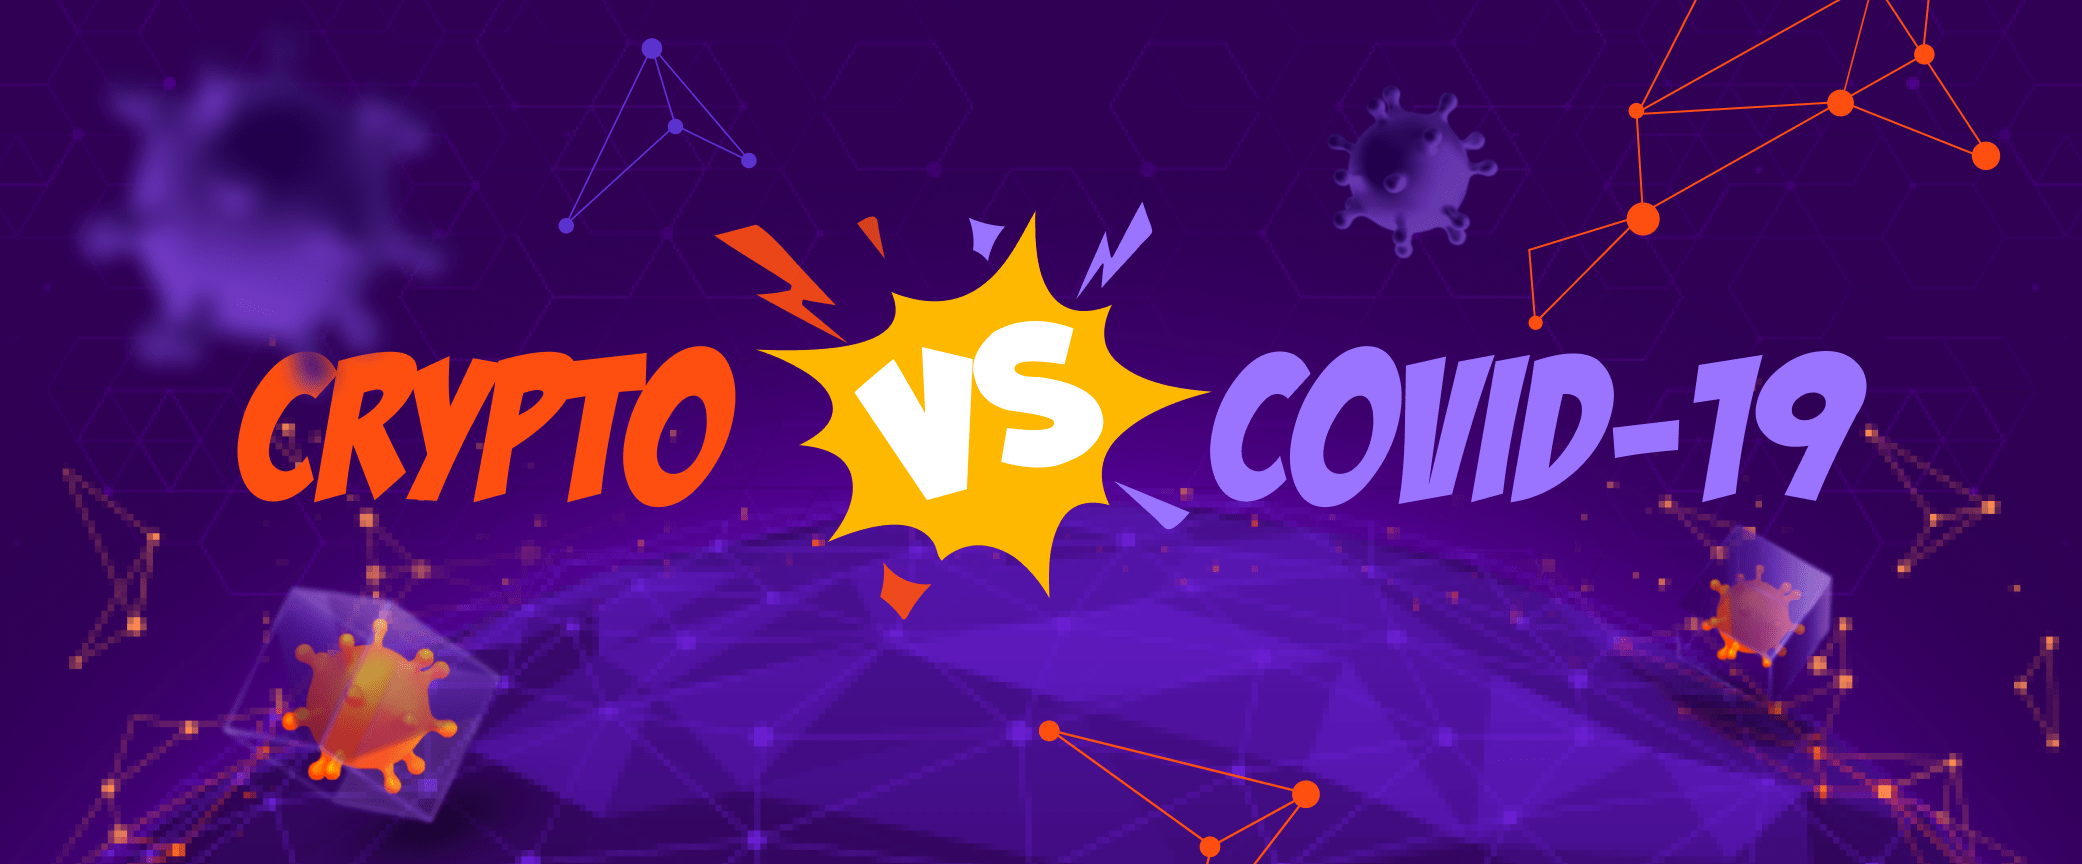 Crypto vs COVID-19: Bitcasino raises 20BTC donation